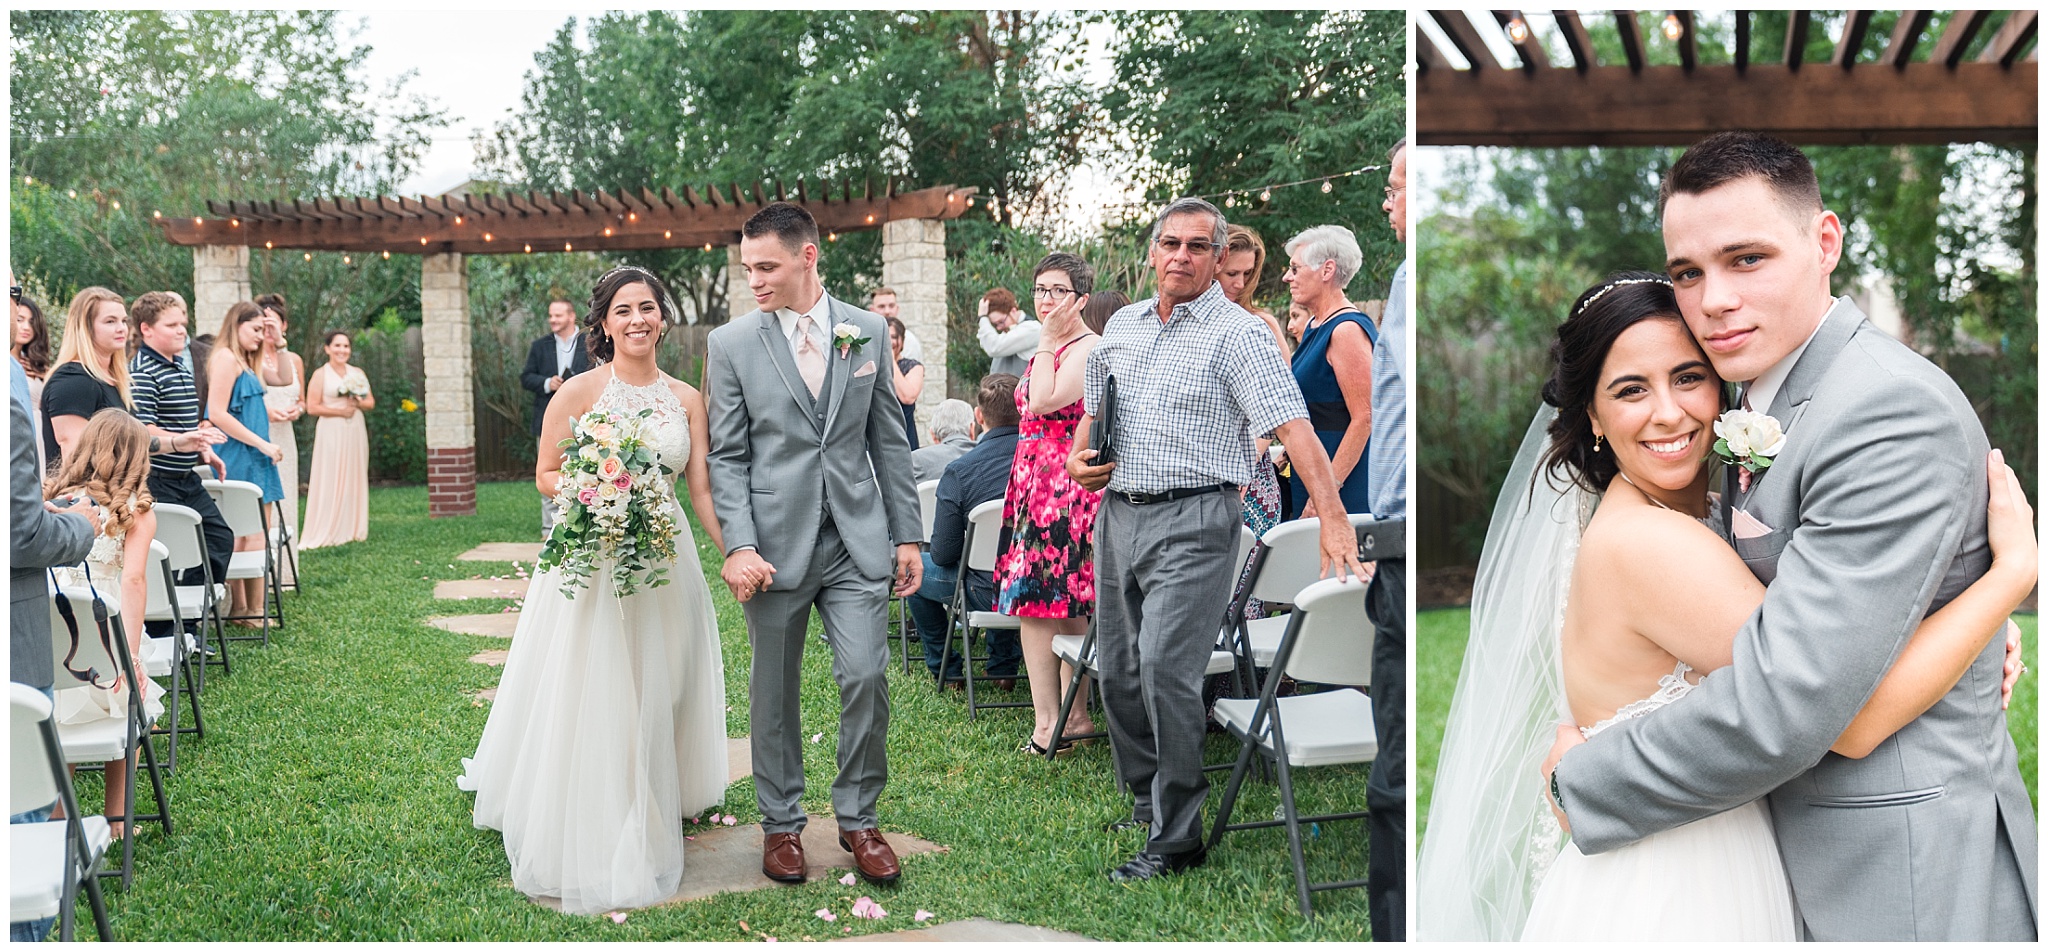 Joyful and Intimate Backyard Wedding Cypress Texas-2017-06-14_0013